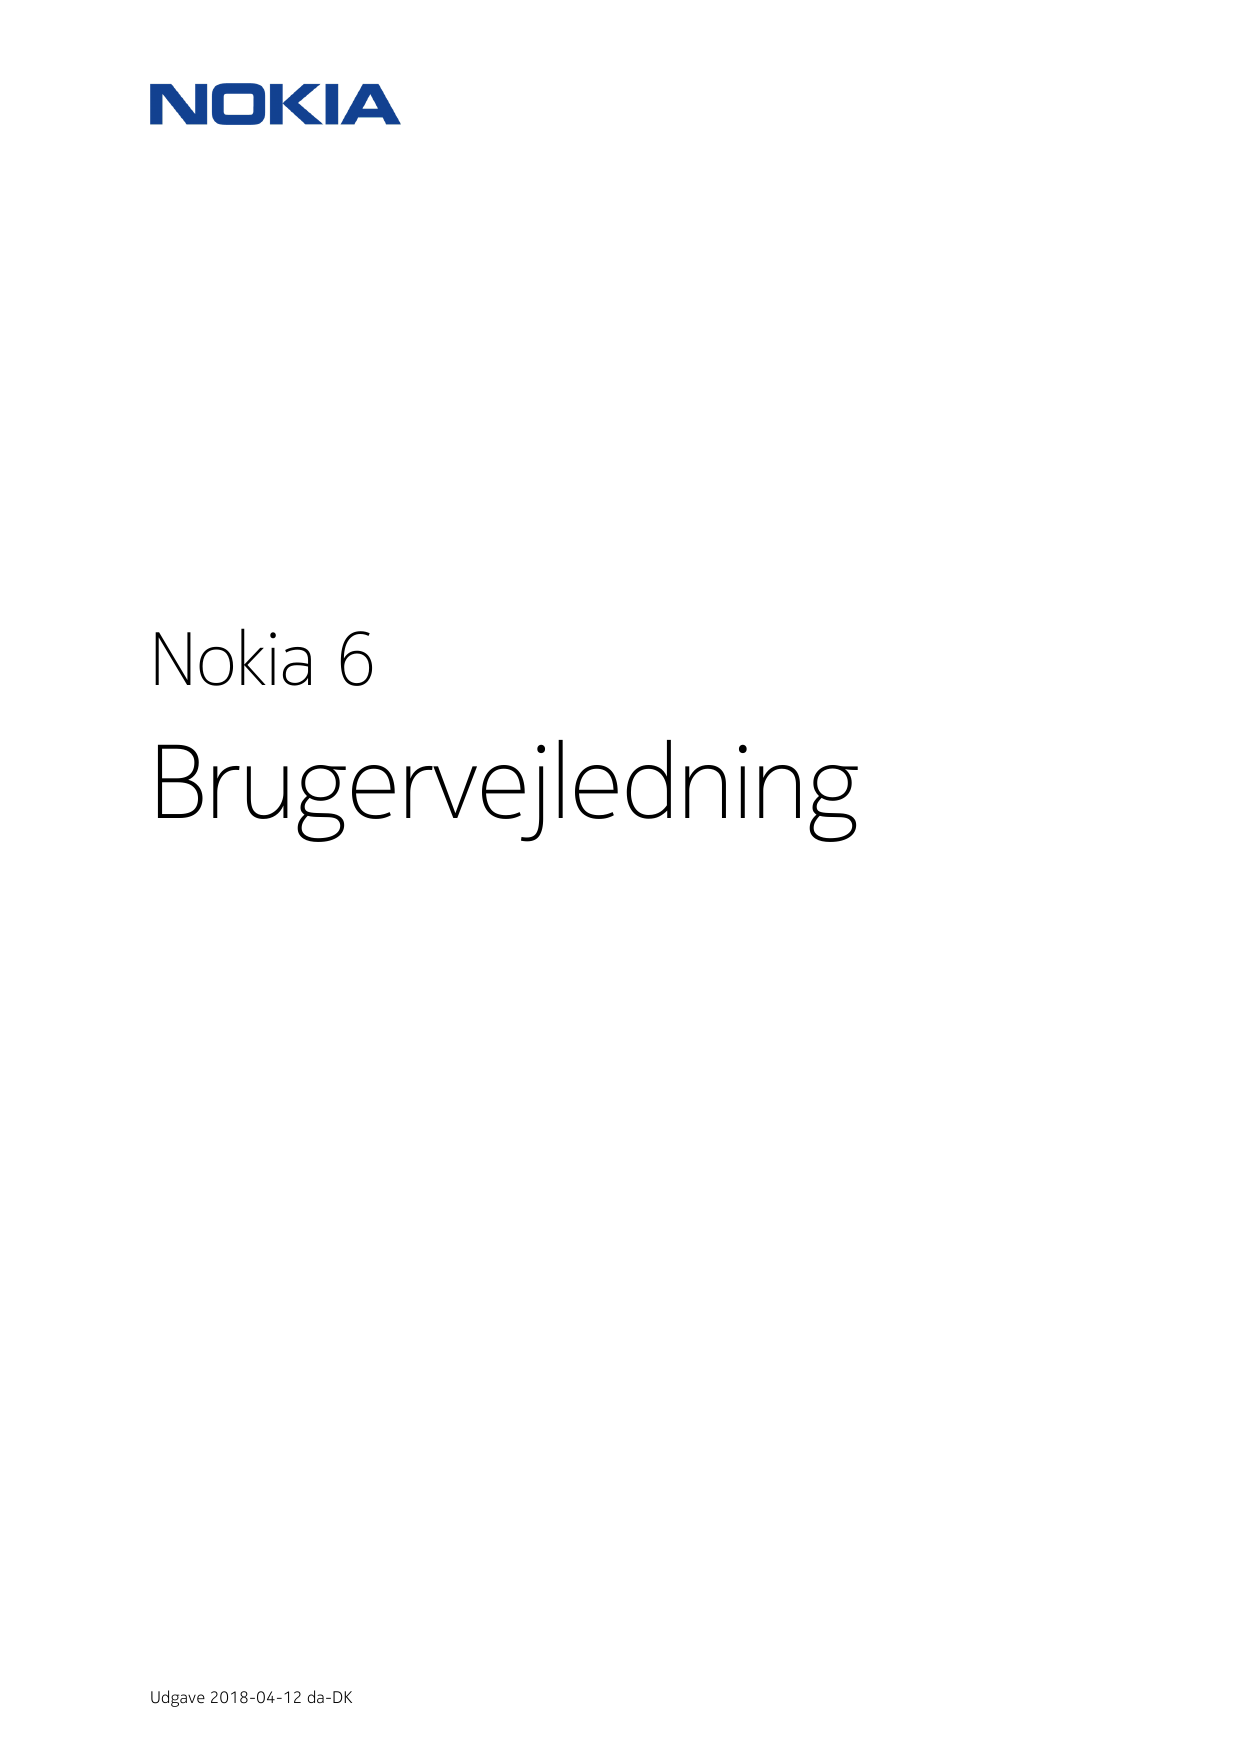 Nokia 6BrugervejledningUdgave 2018-04-12 da-DK